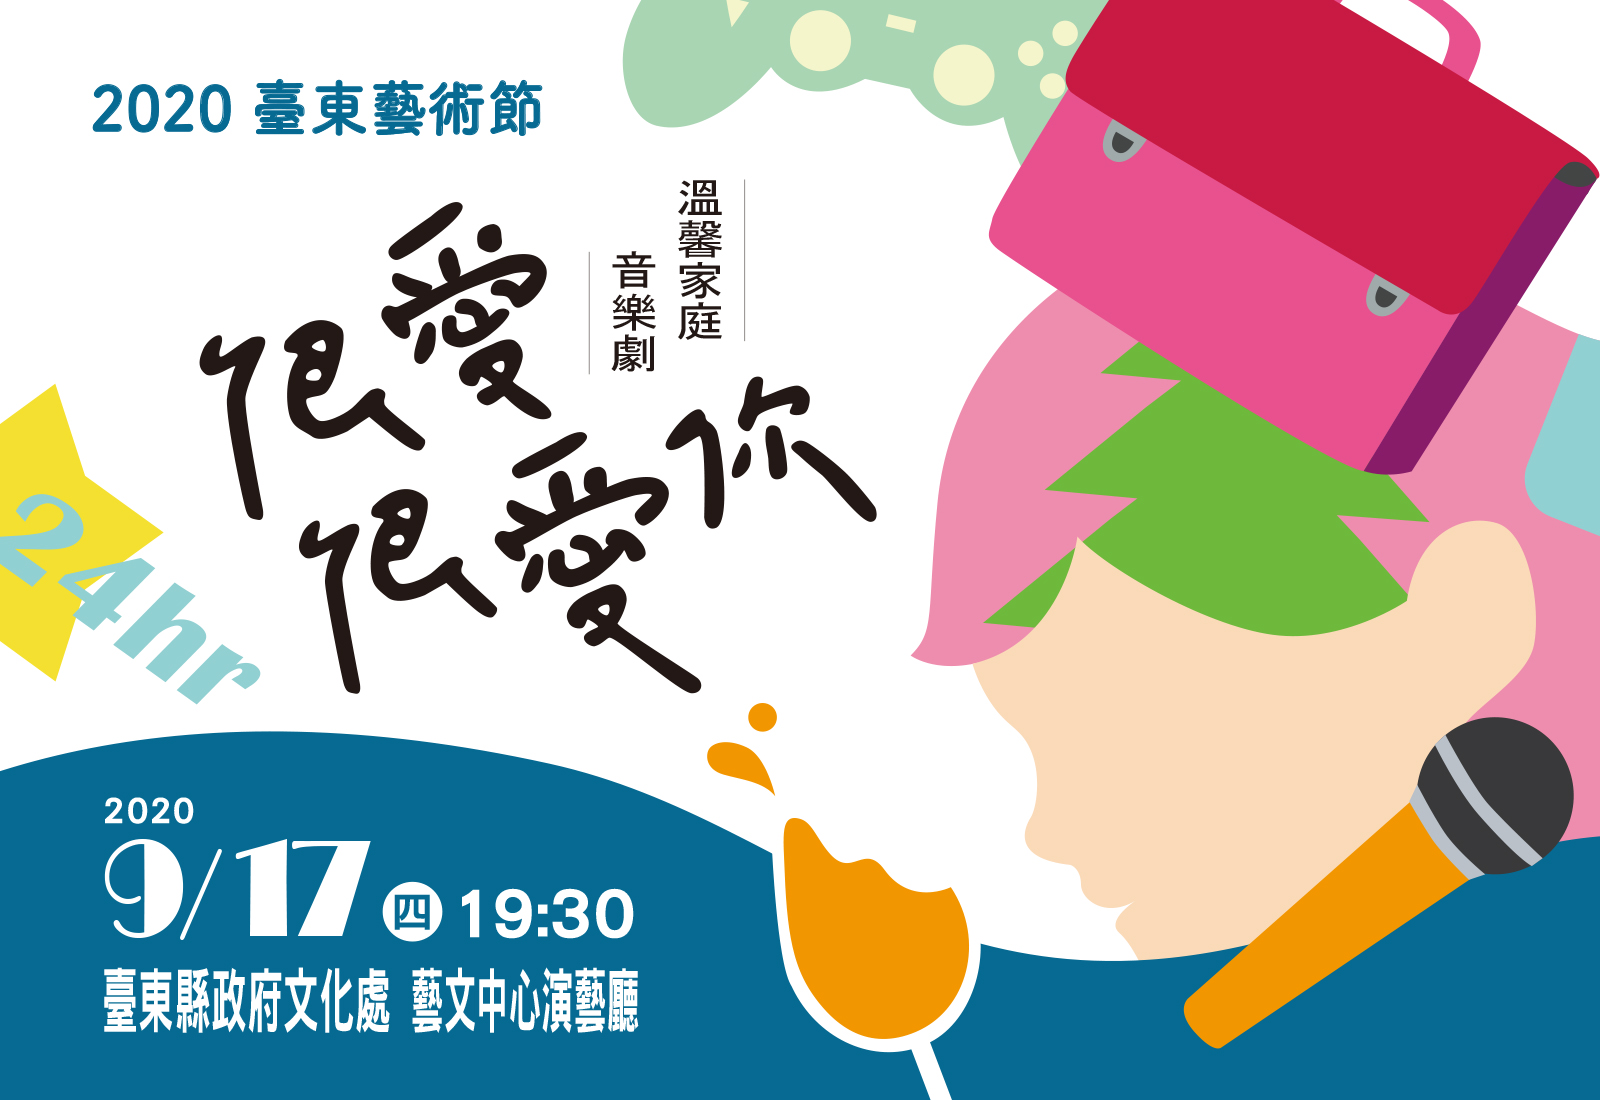 9/17 2020臺東藝術節-愛樂劇工廠溫馨家庭音樂劇《很愛很愛你》